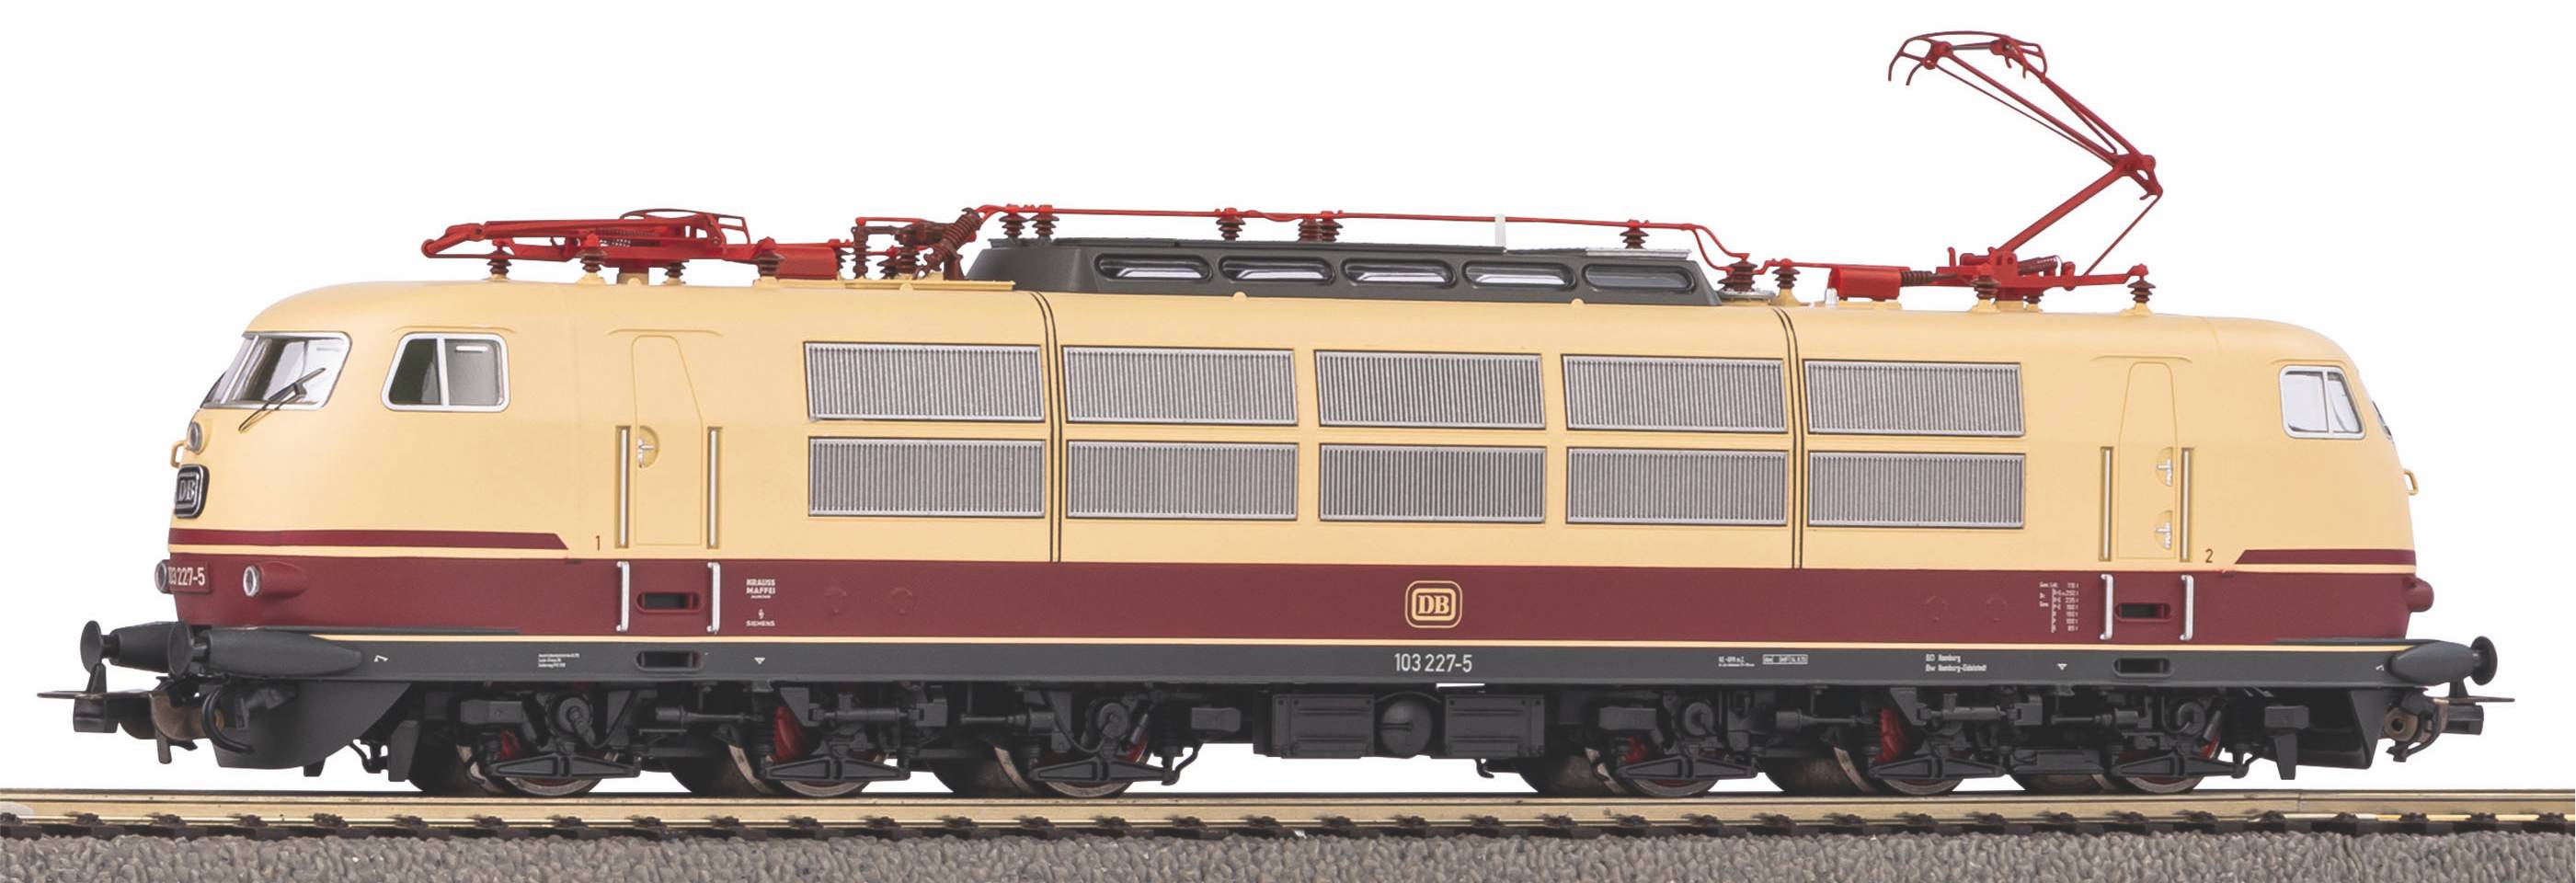 Piko 51689 - E-Lok BR 103 kurze Ausführung, DBAG, Ep.V